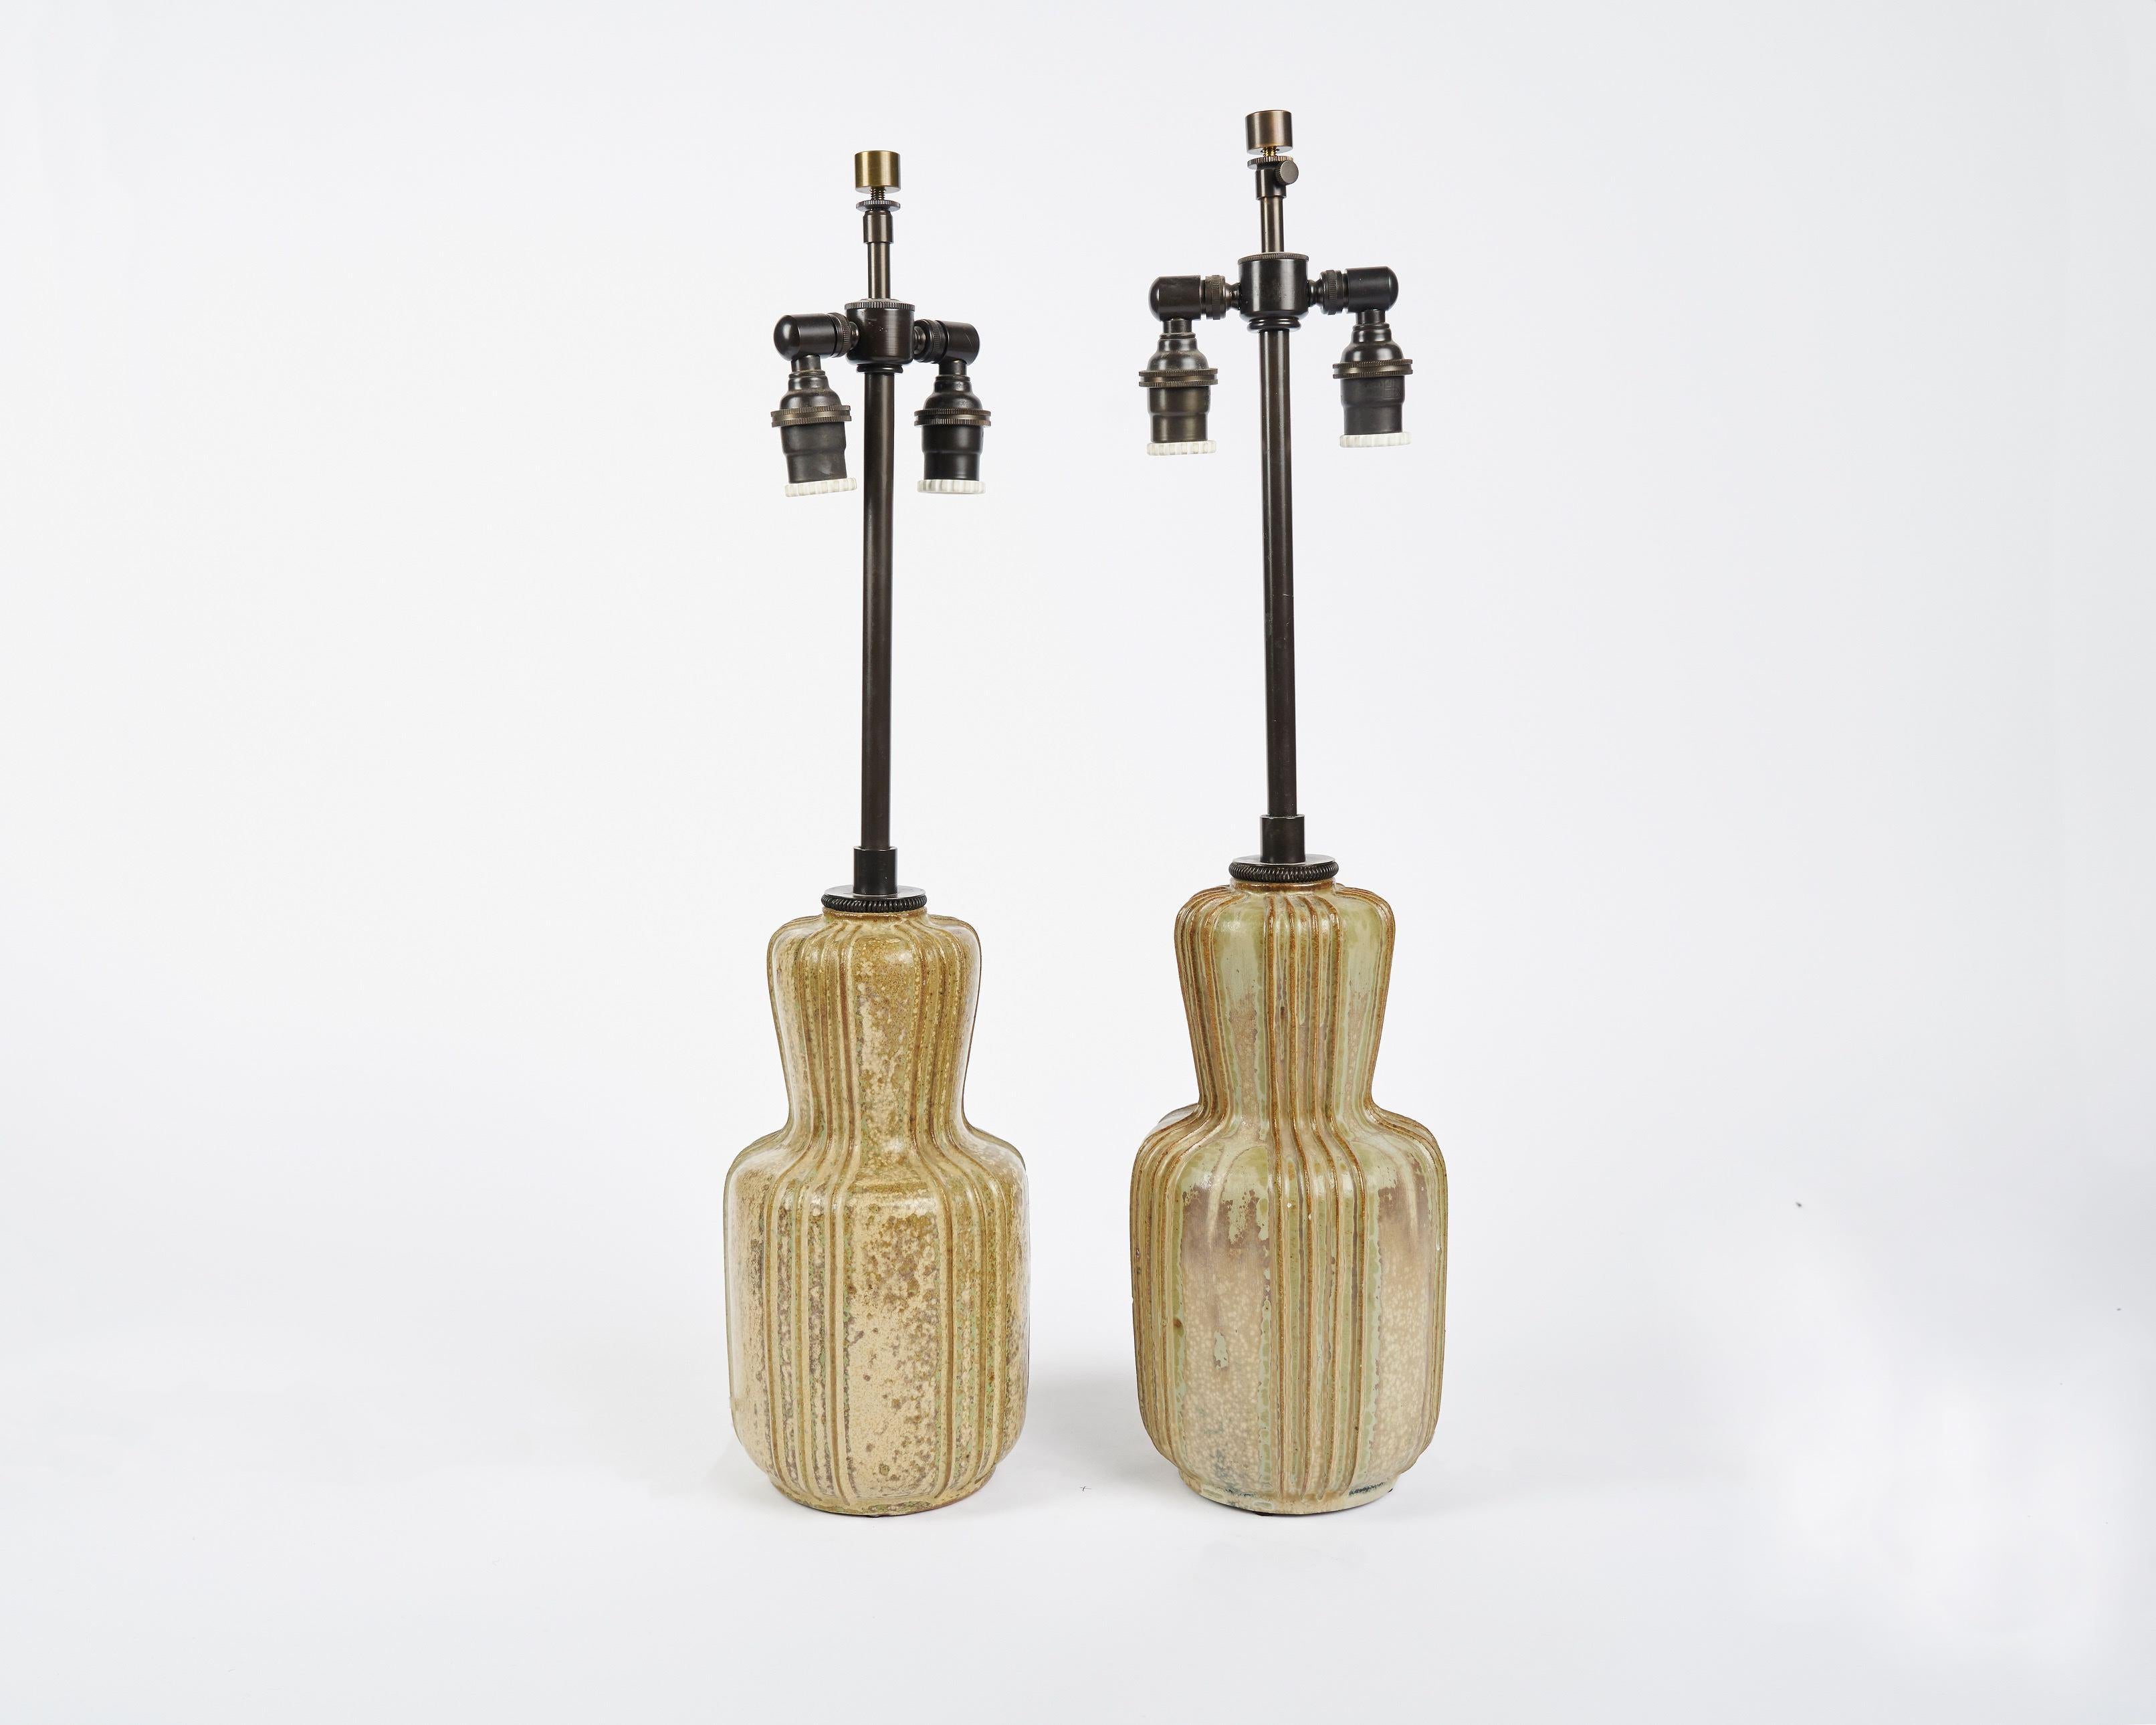 Danish Arne Bang, Pair of Glazed Ceramic Lamps, Denmark, 1930s